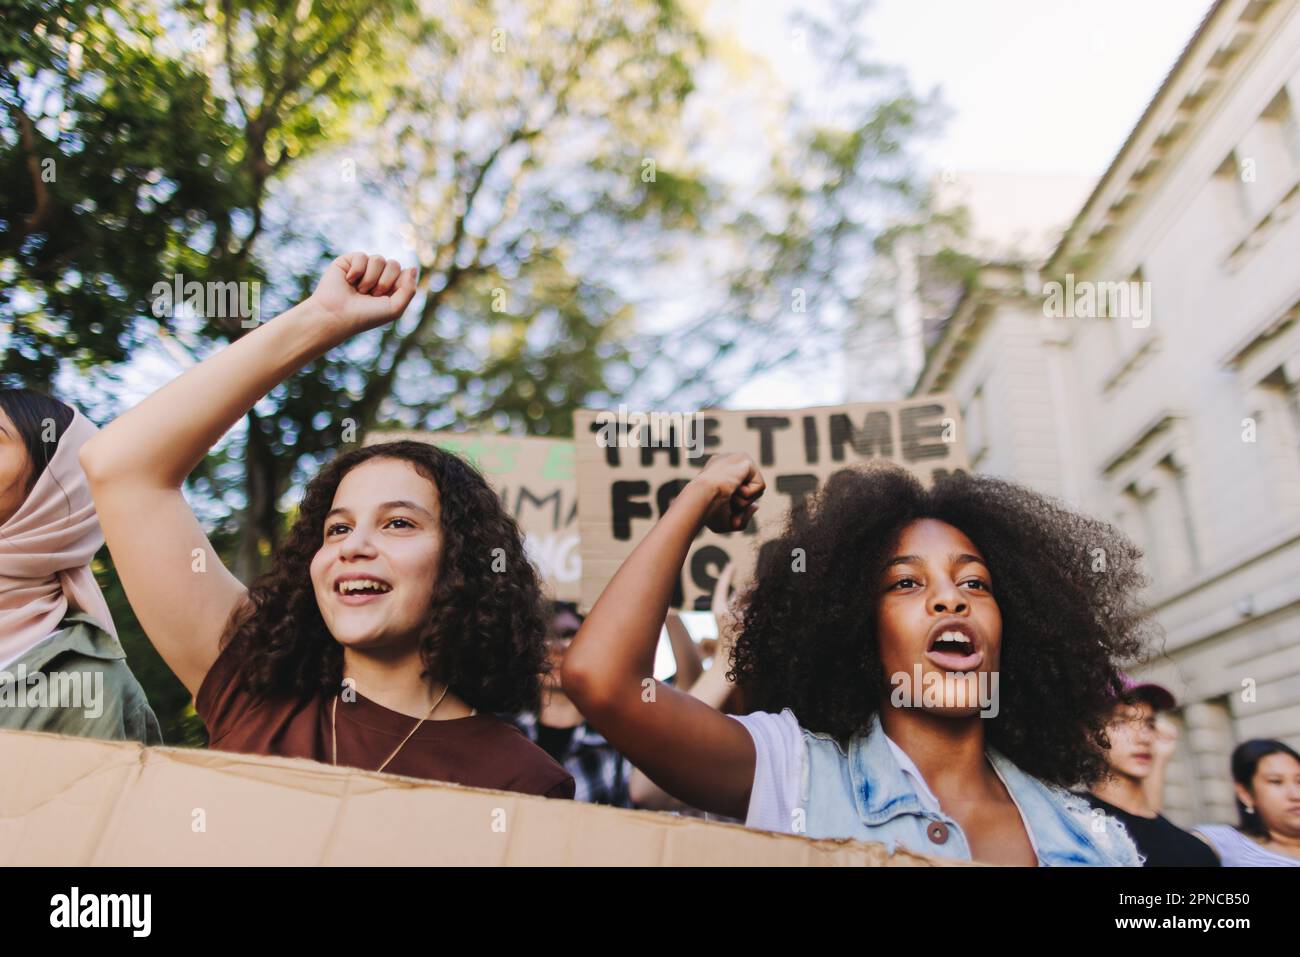 Generazione Z azione contro il cambiamento climatico. Gruppo di attivisti giovanili che protestano contro il riscaldamento globale e l'inquinamento. Multiculturale giovane peopl Foto Stock